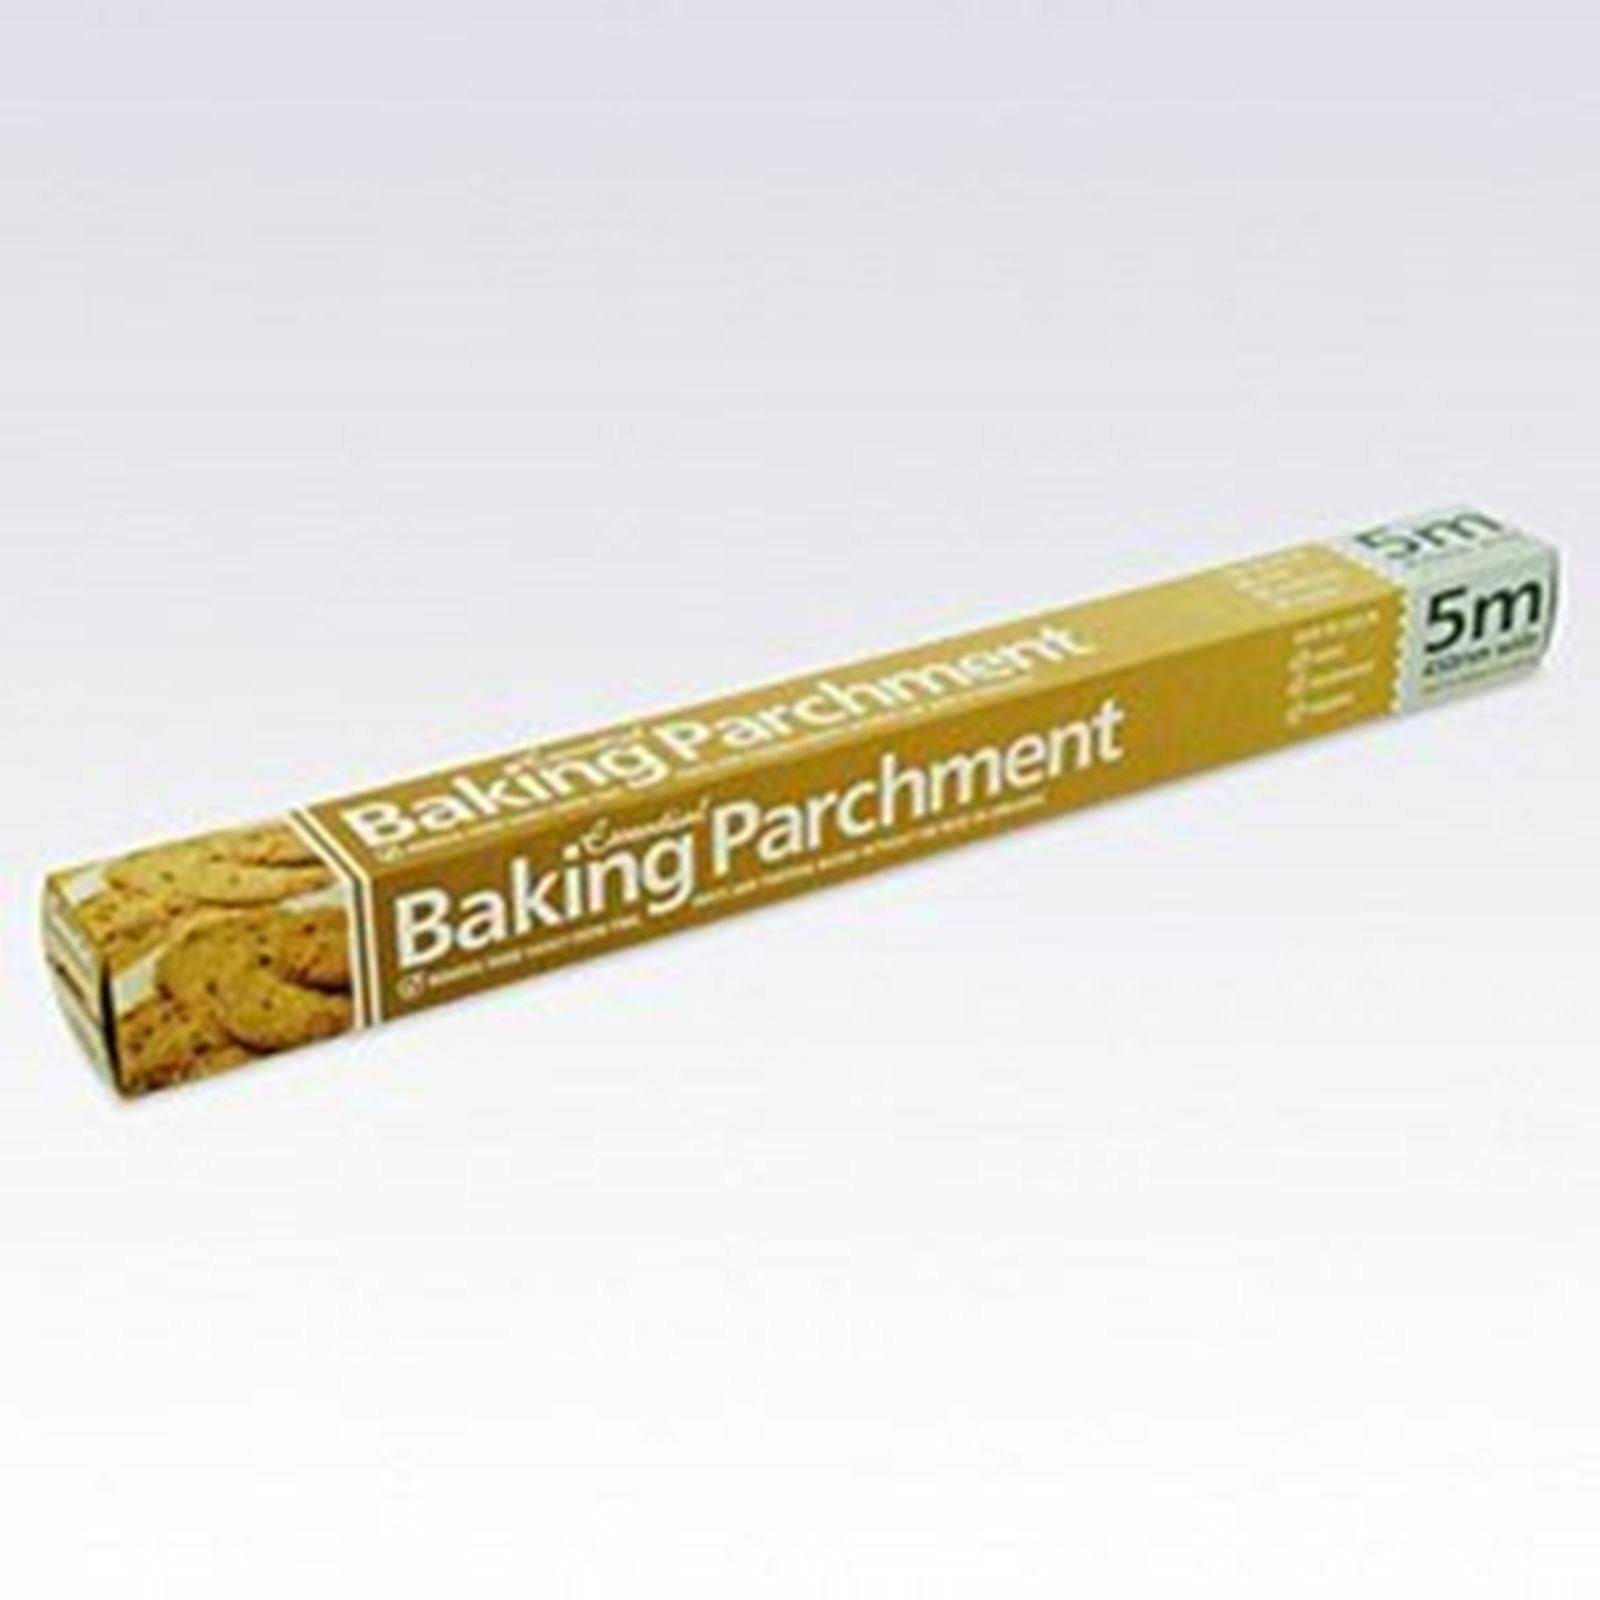 Essential Baking Parchment 5m